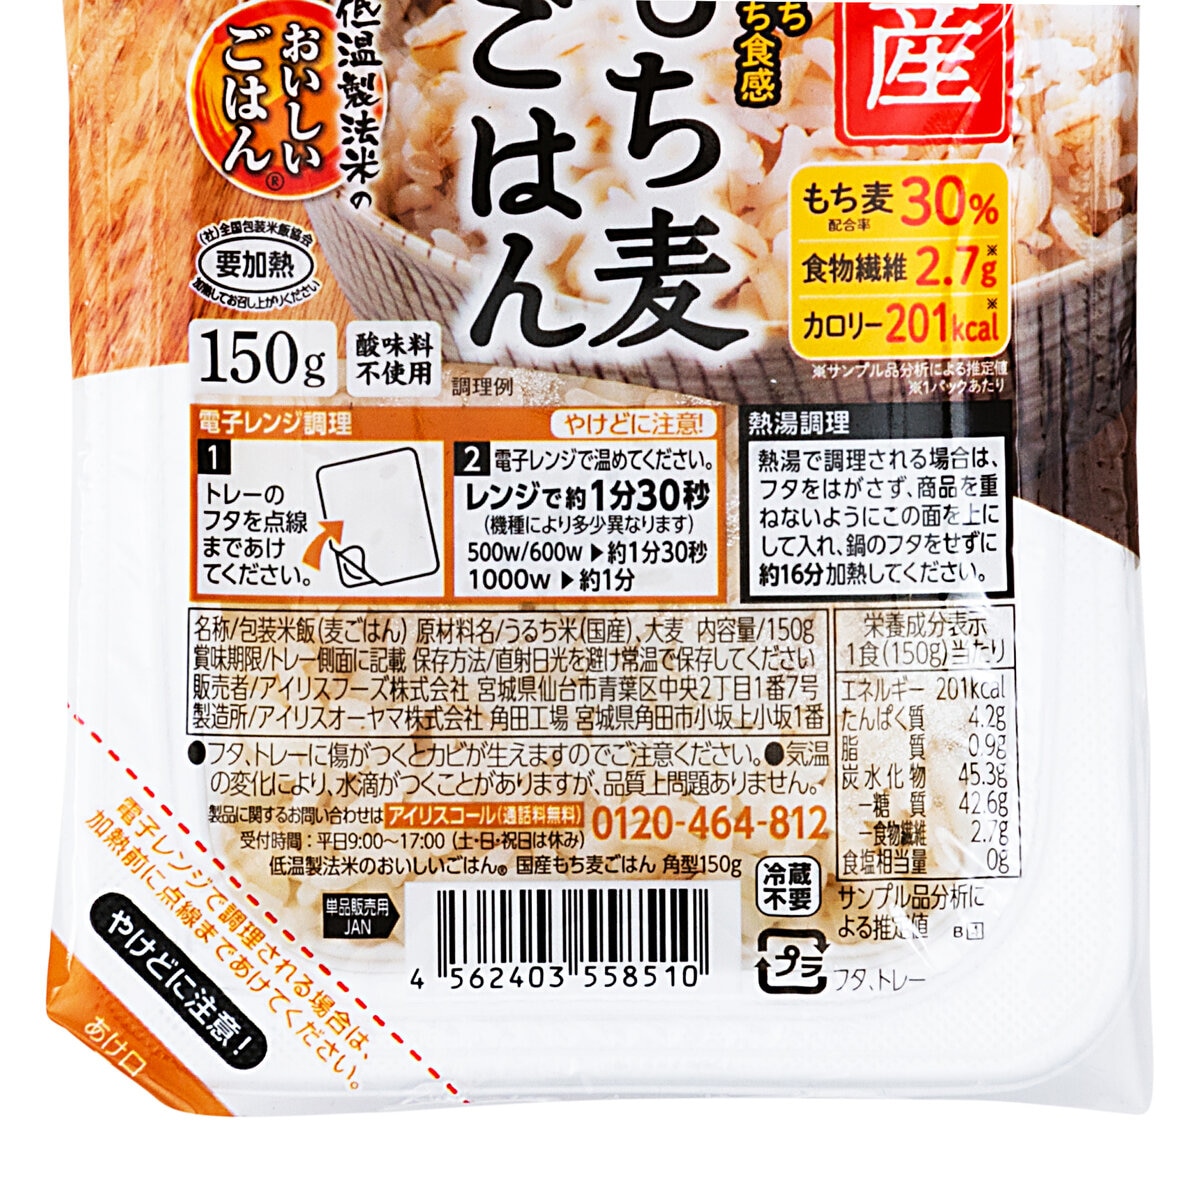 Japan　アイリスオーヤマ　24パック　低温製法米もち麦パックライス　Costco